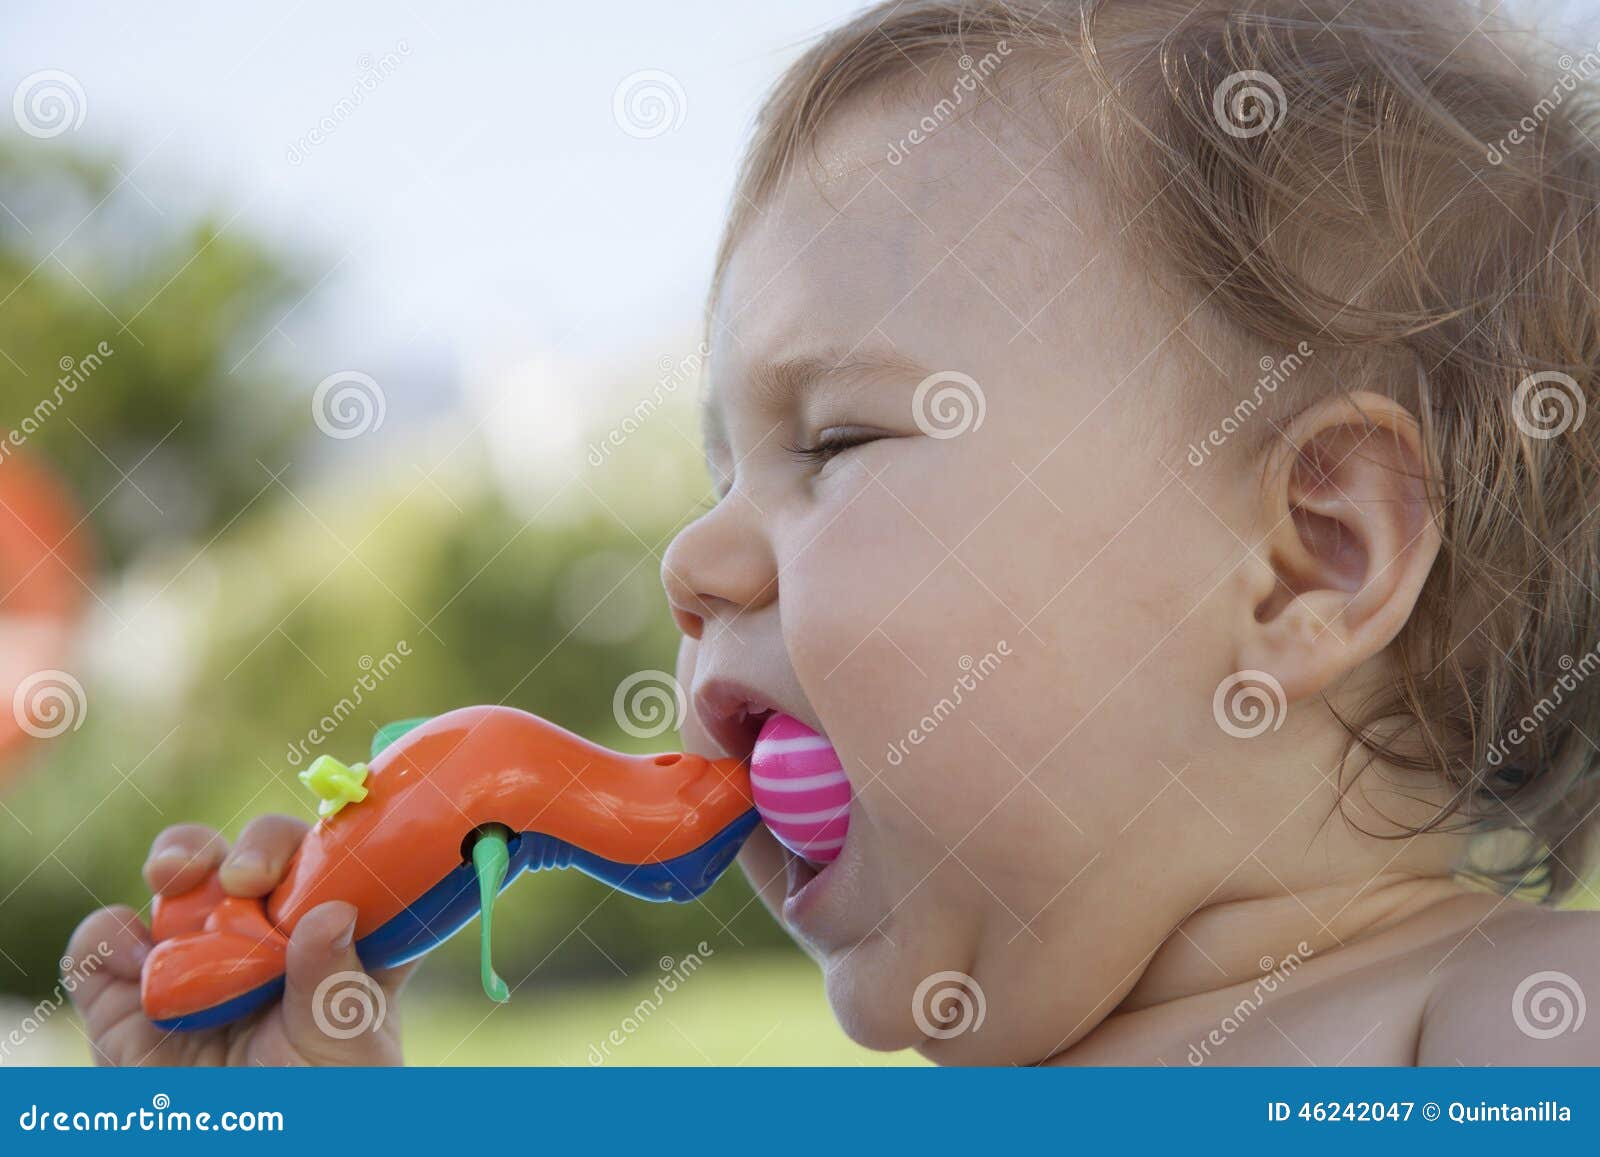 Weggooien Besmettelijke ziekte paar Baby Die Plastic Stuk Speelgoed Eten Stock Afbeelding - Image of bijten,  dochter: 46242047